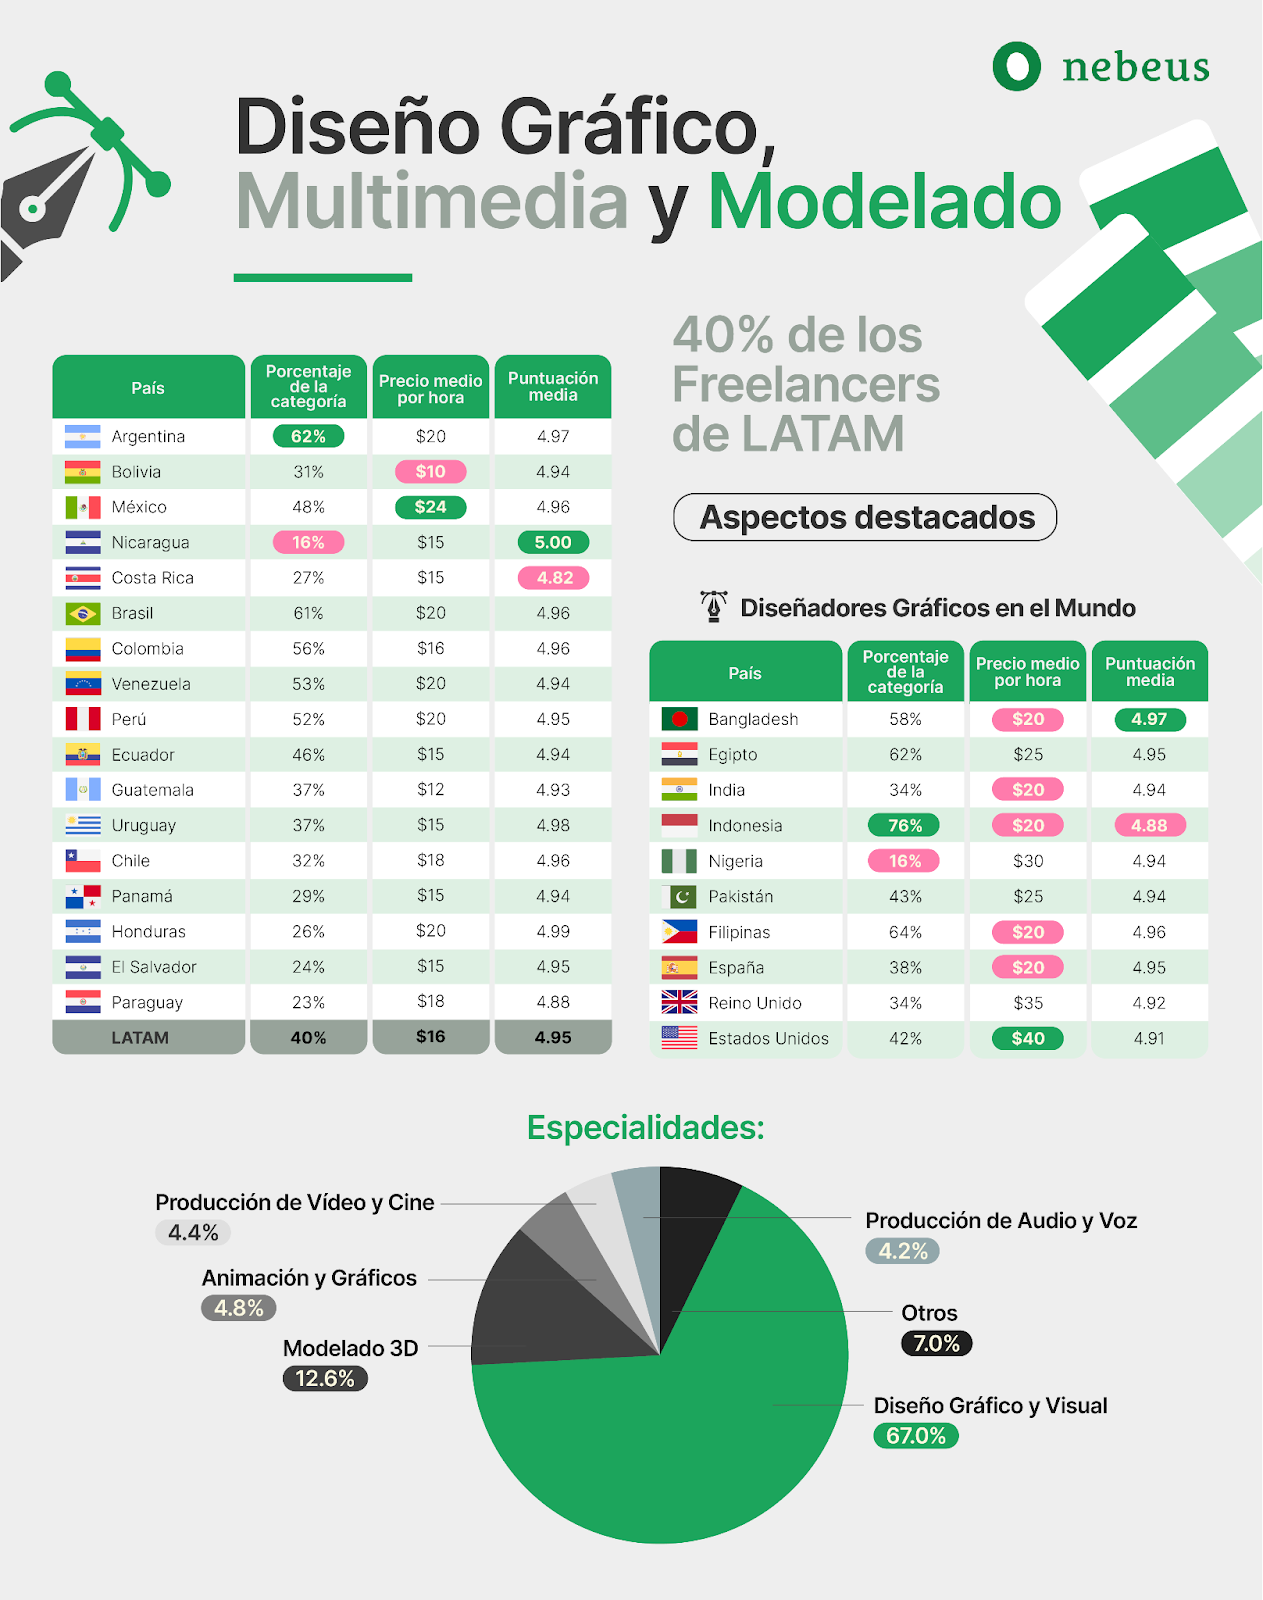 Freelancers latinoamericanos: un valor en alza en el mercado global